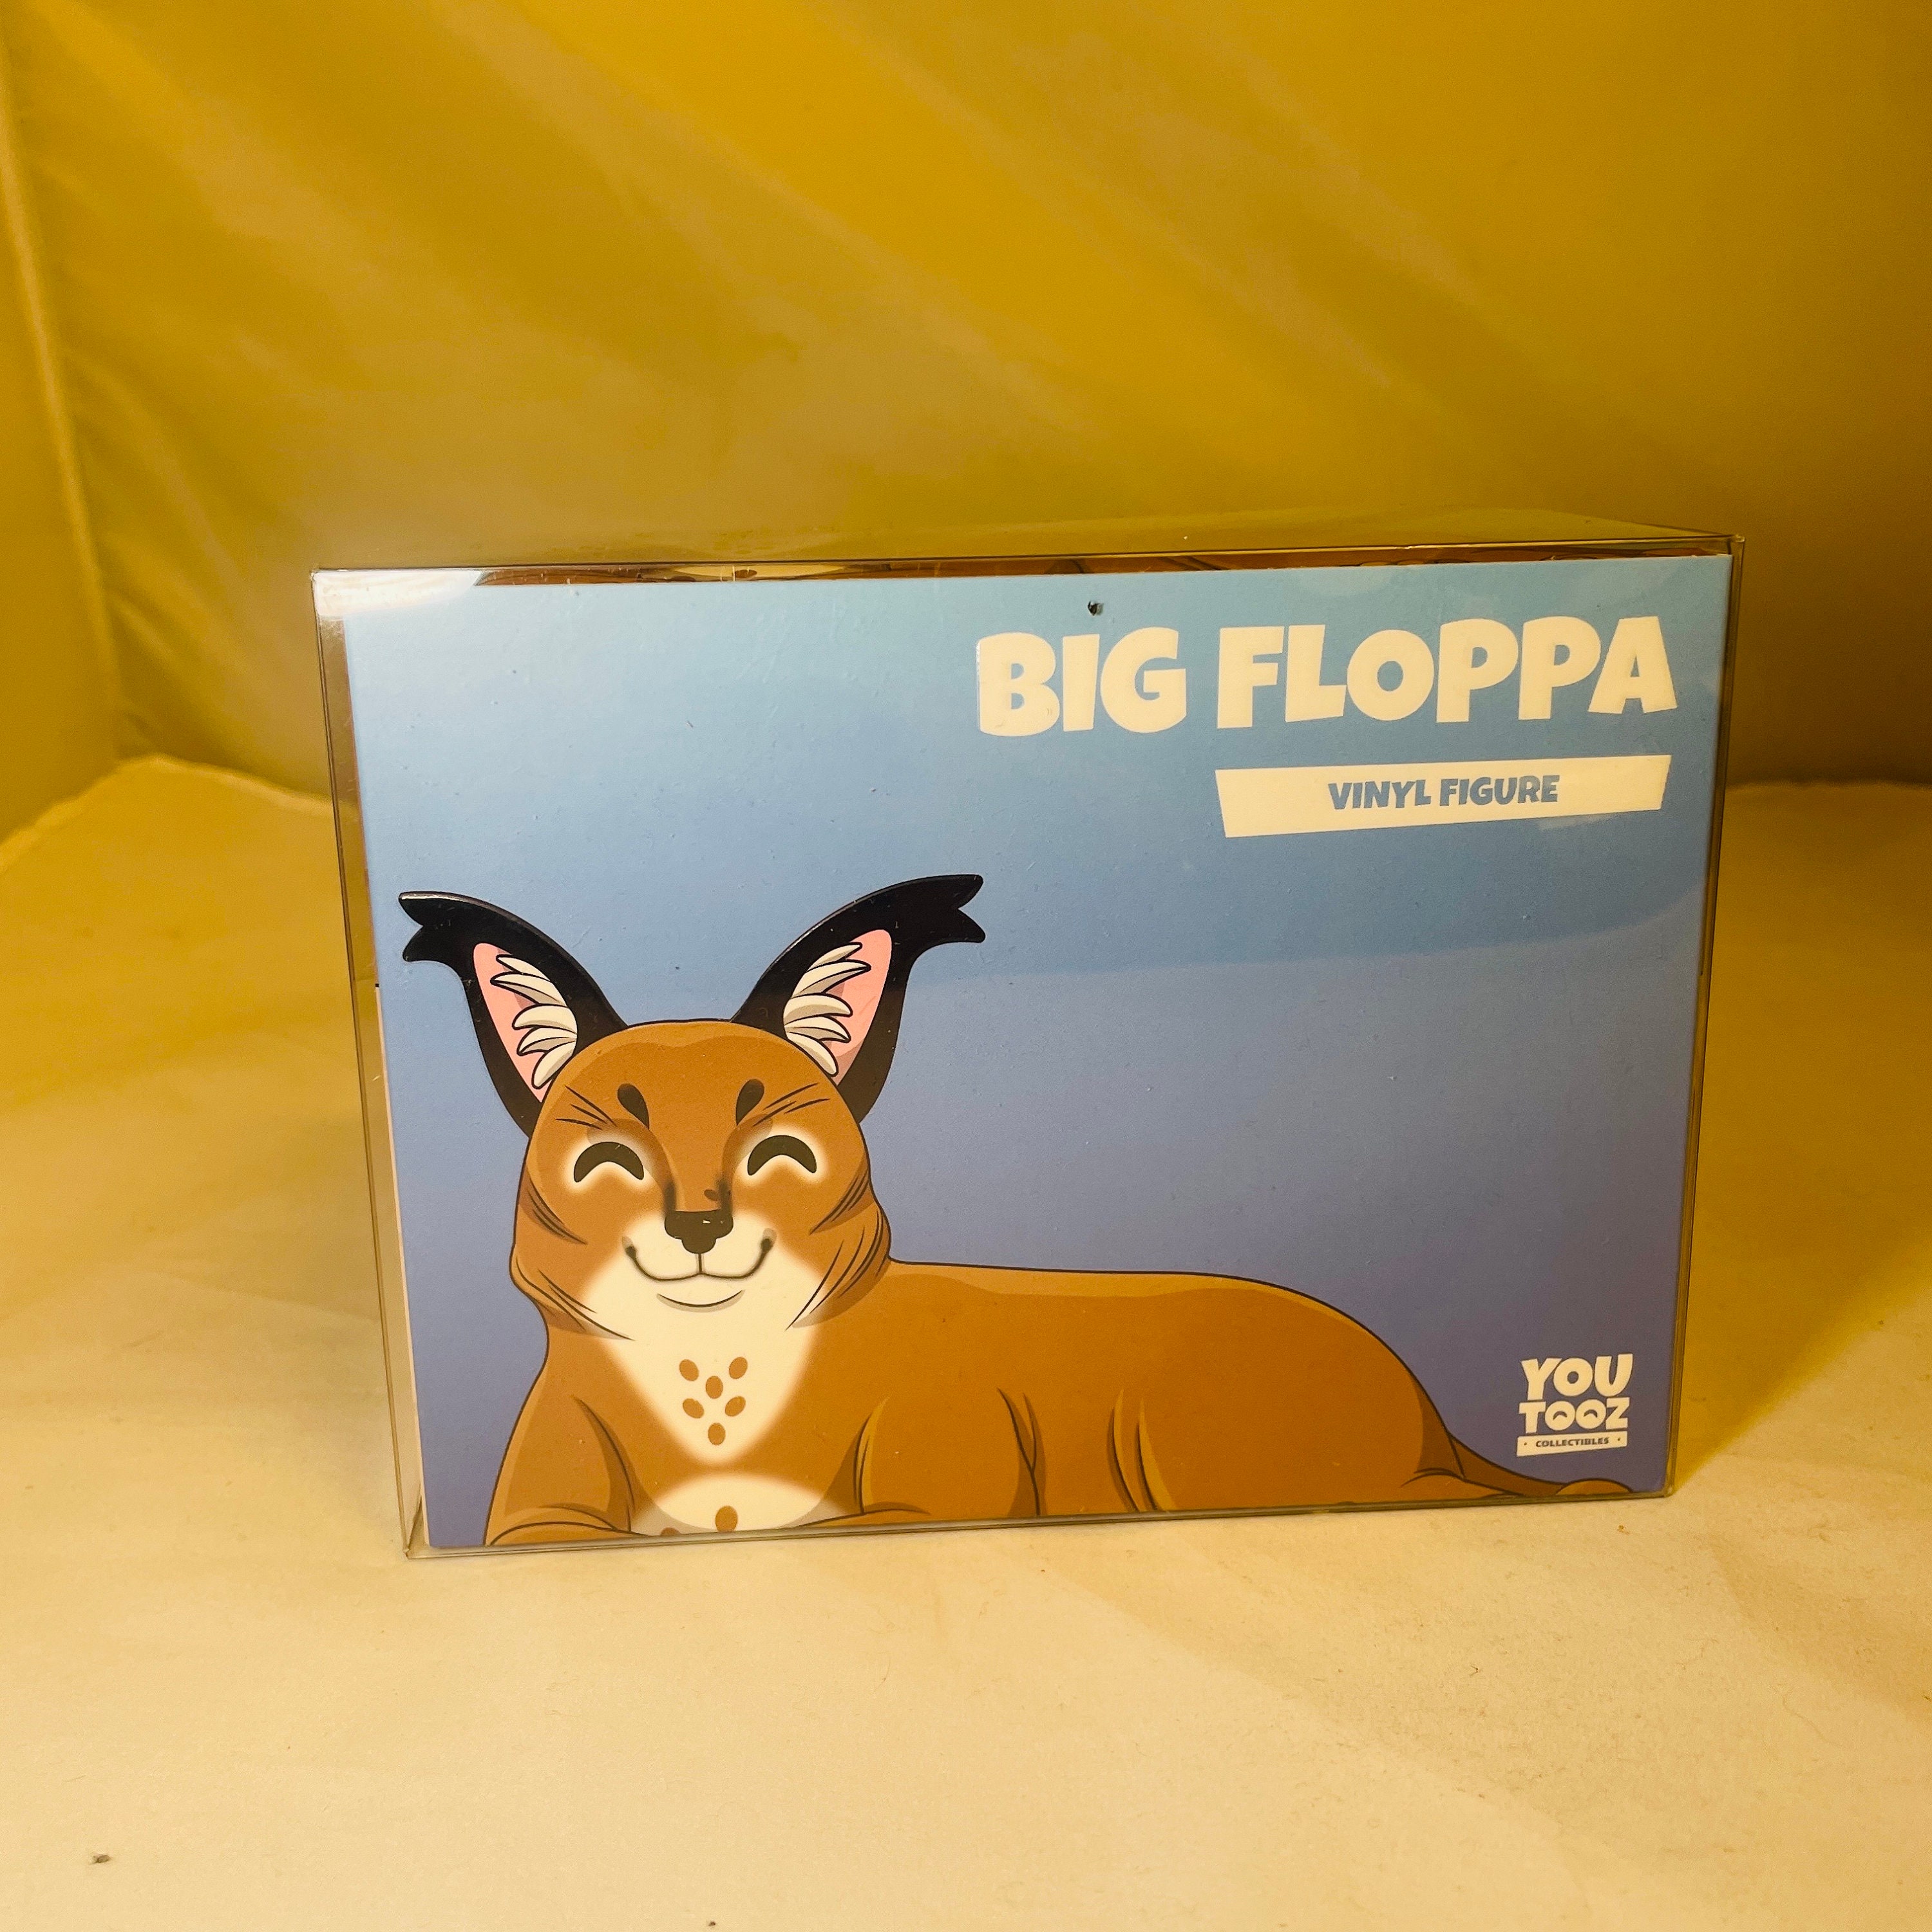 I made a floppa cube based on the big floppa youtooz plush! I put